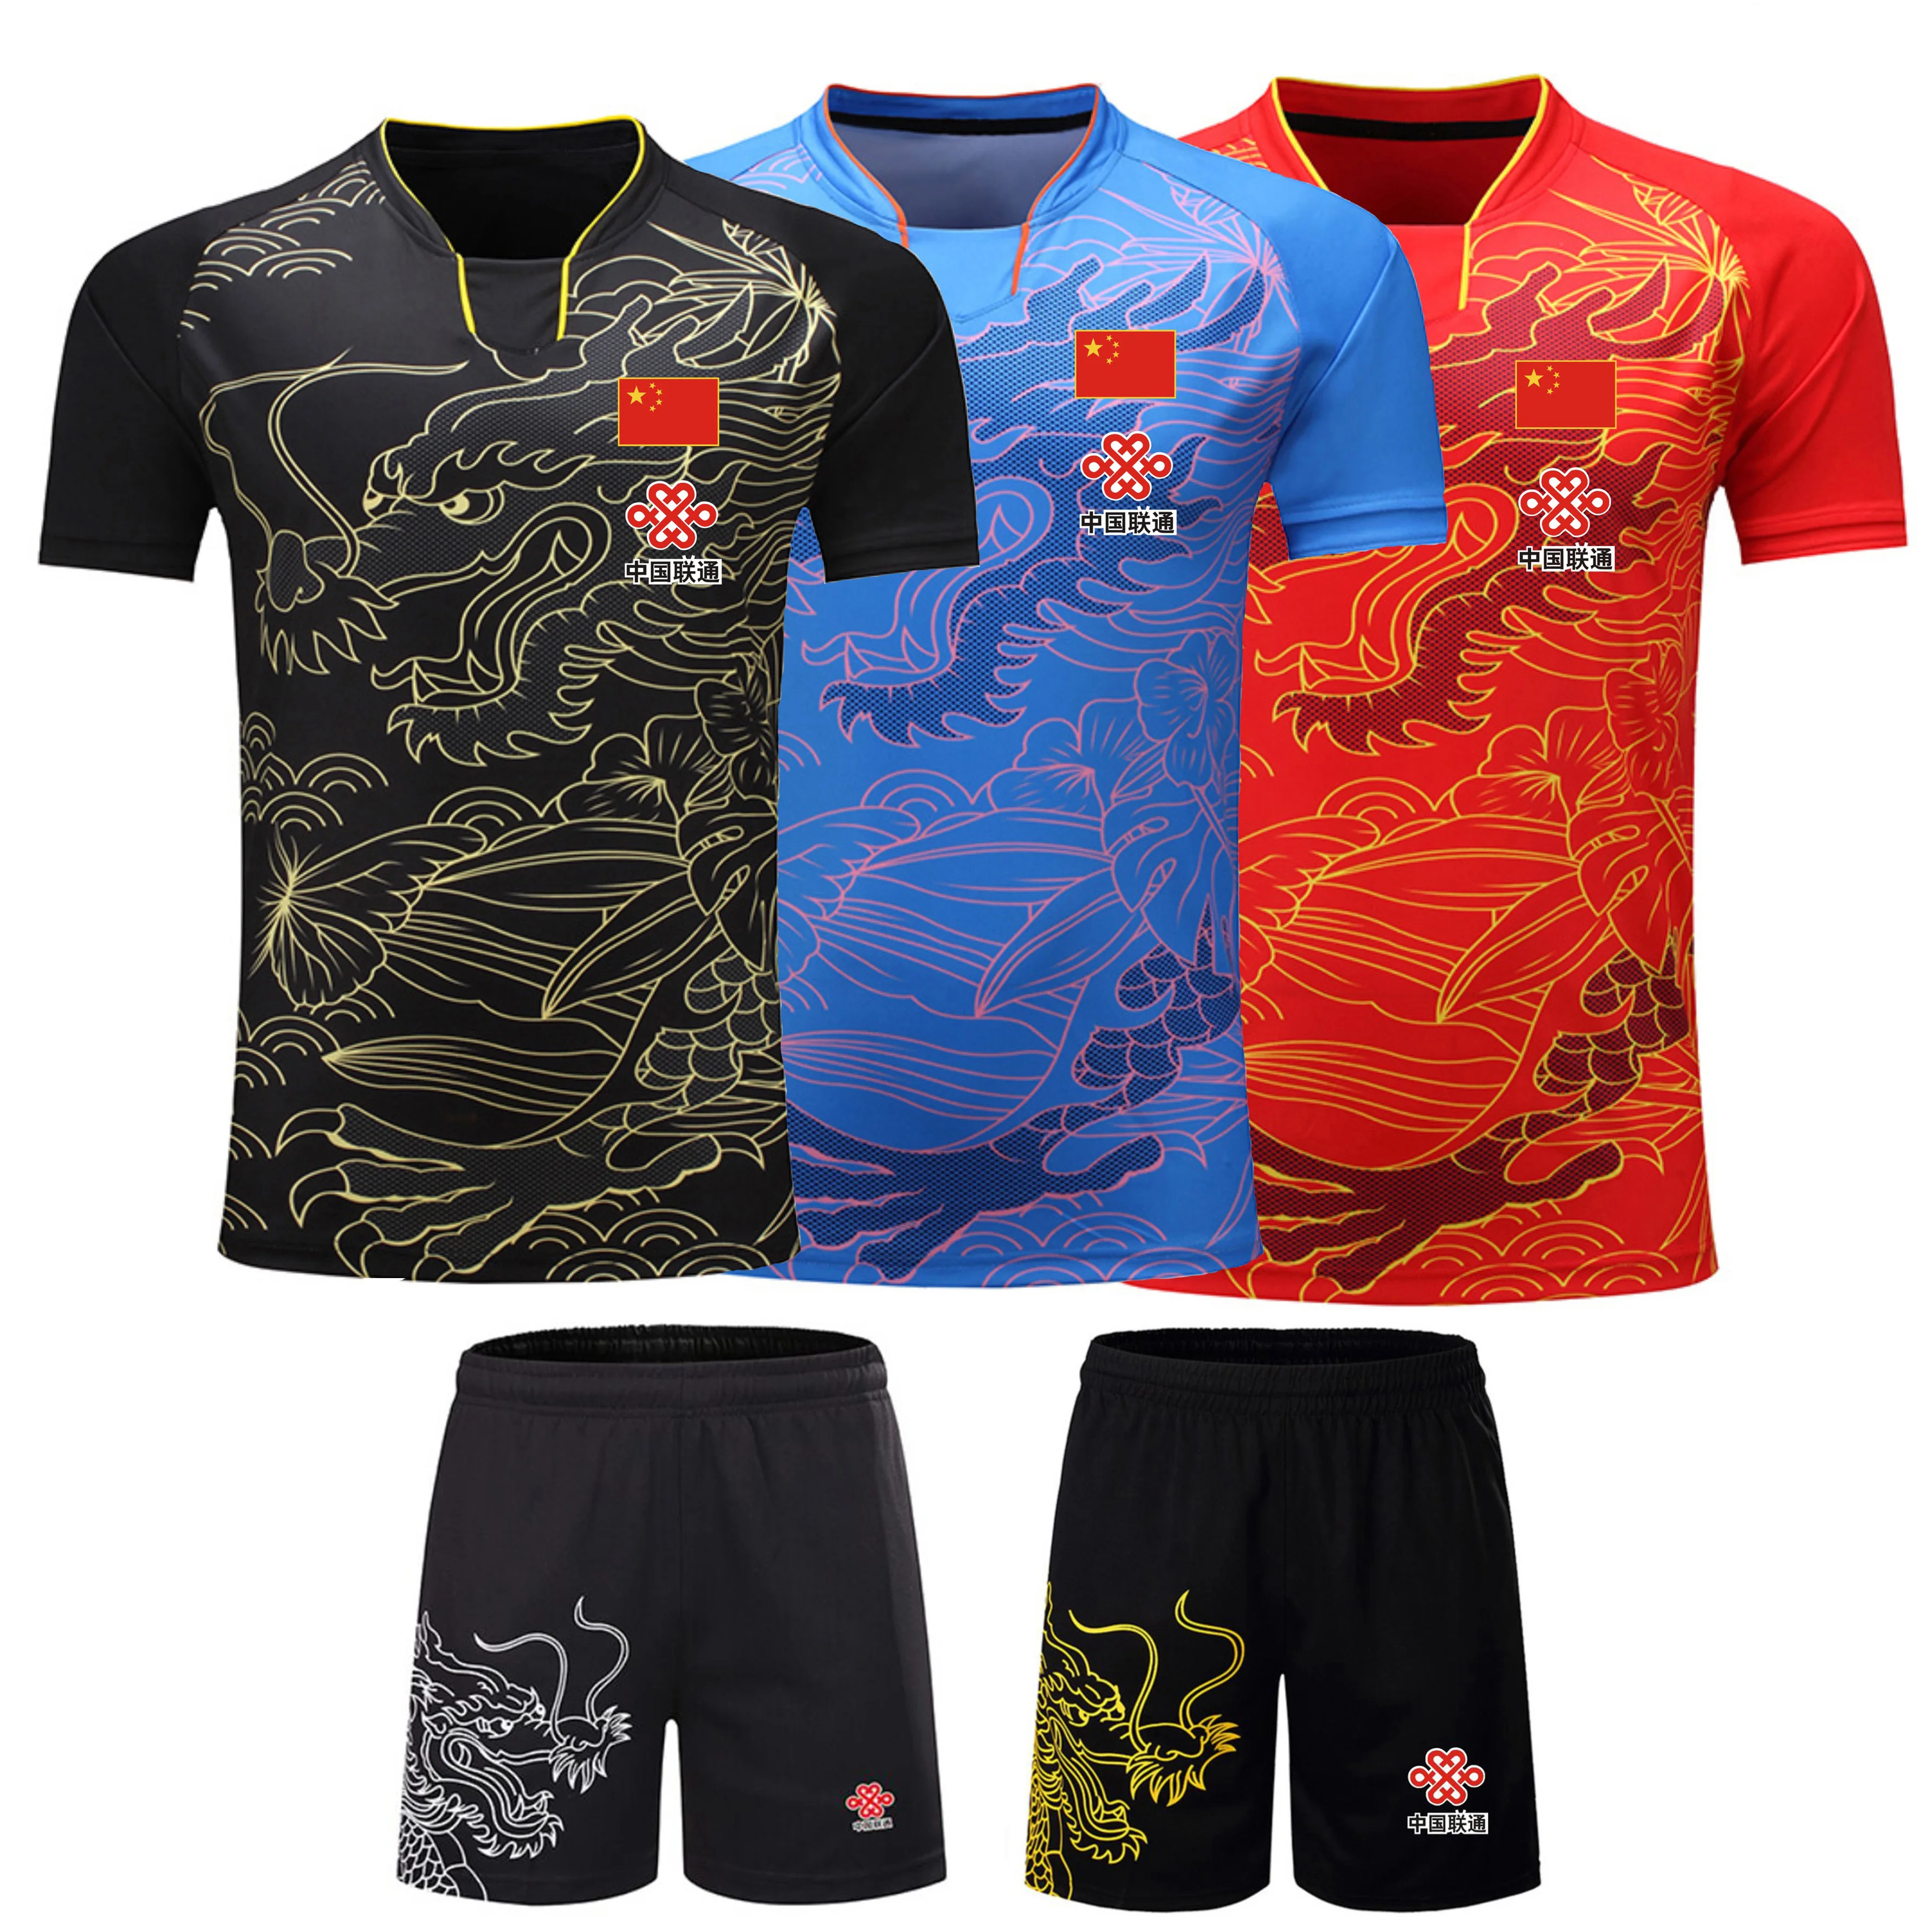 Новые спортивные китайские футболки для настольного тенниса с рисунком дракона